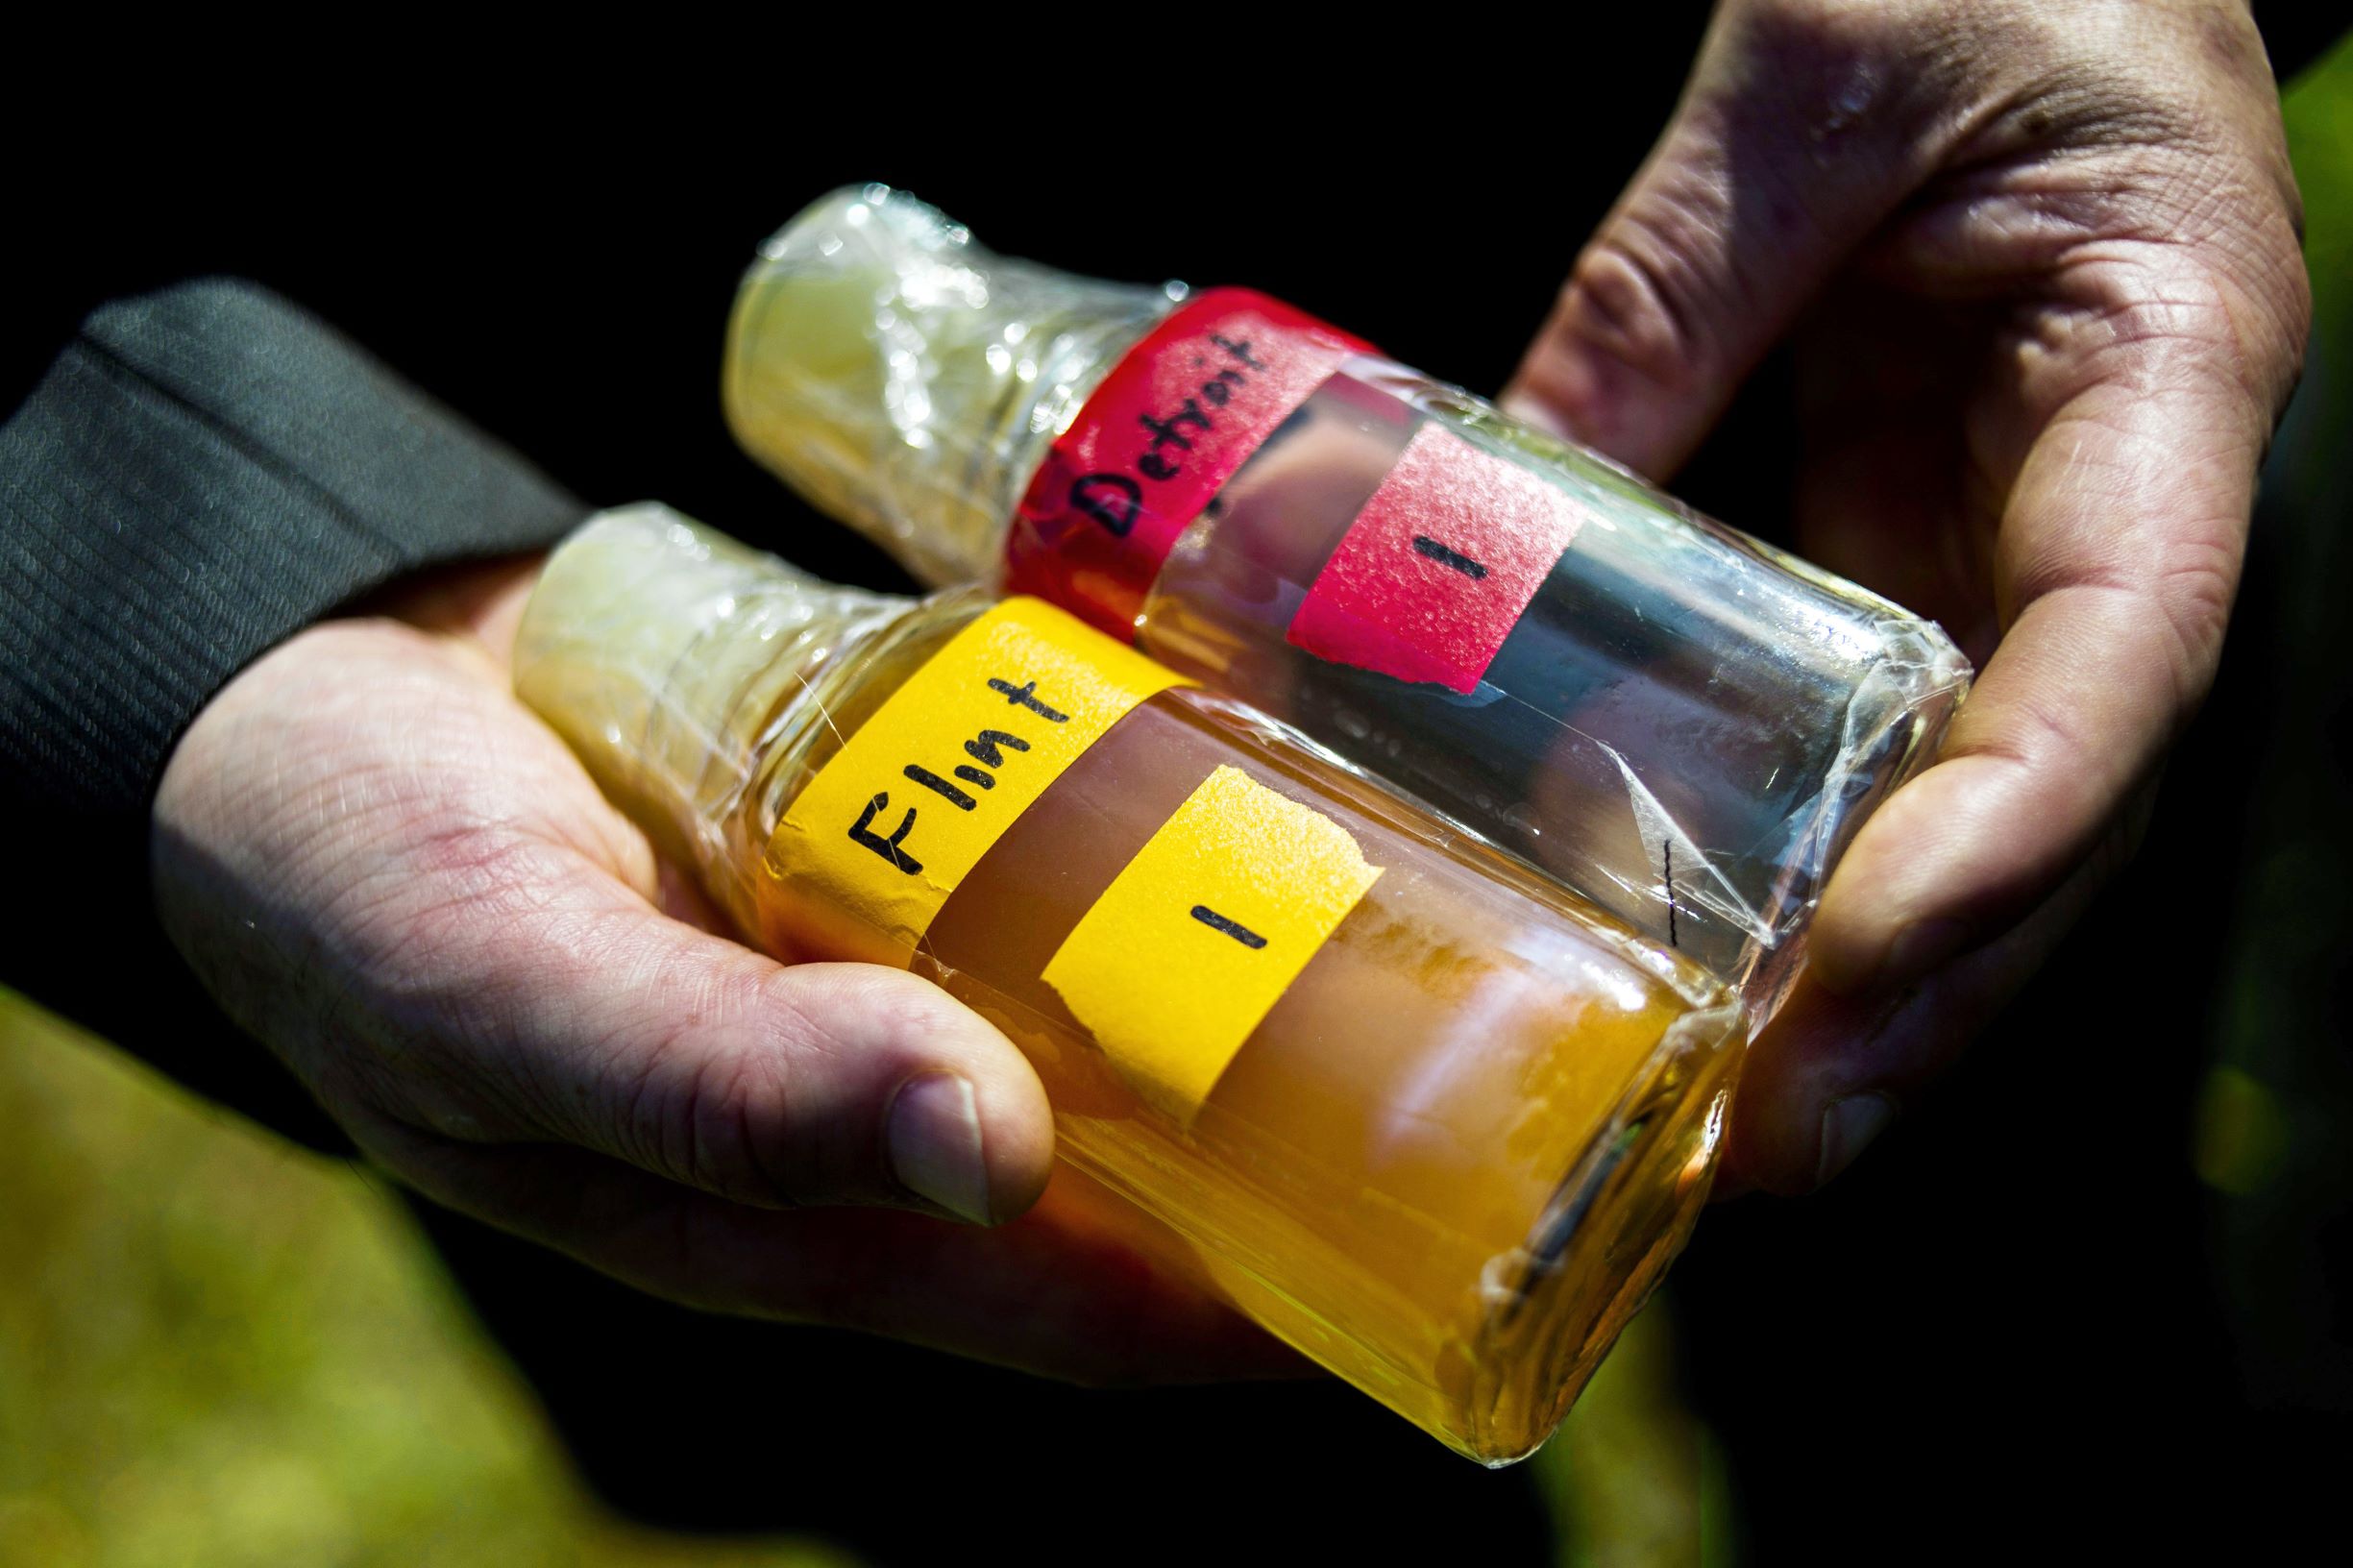 Flint Michigan water samples